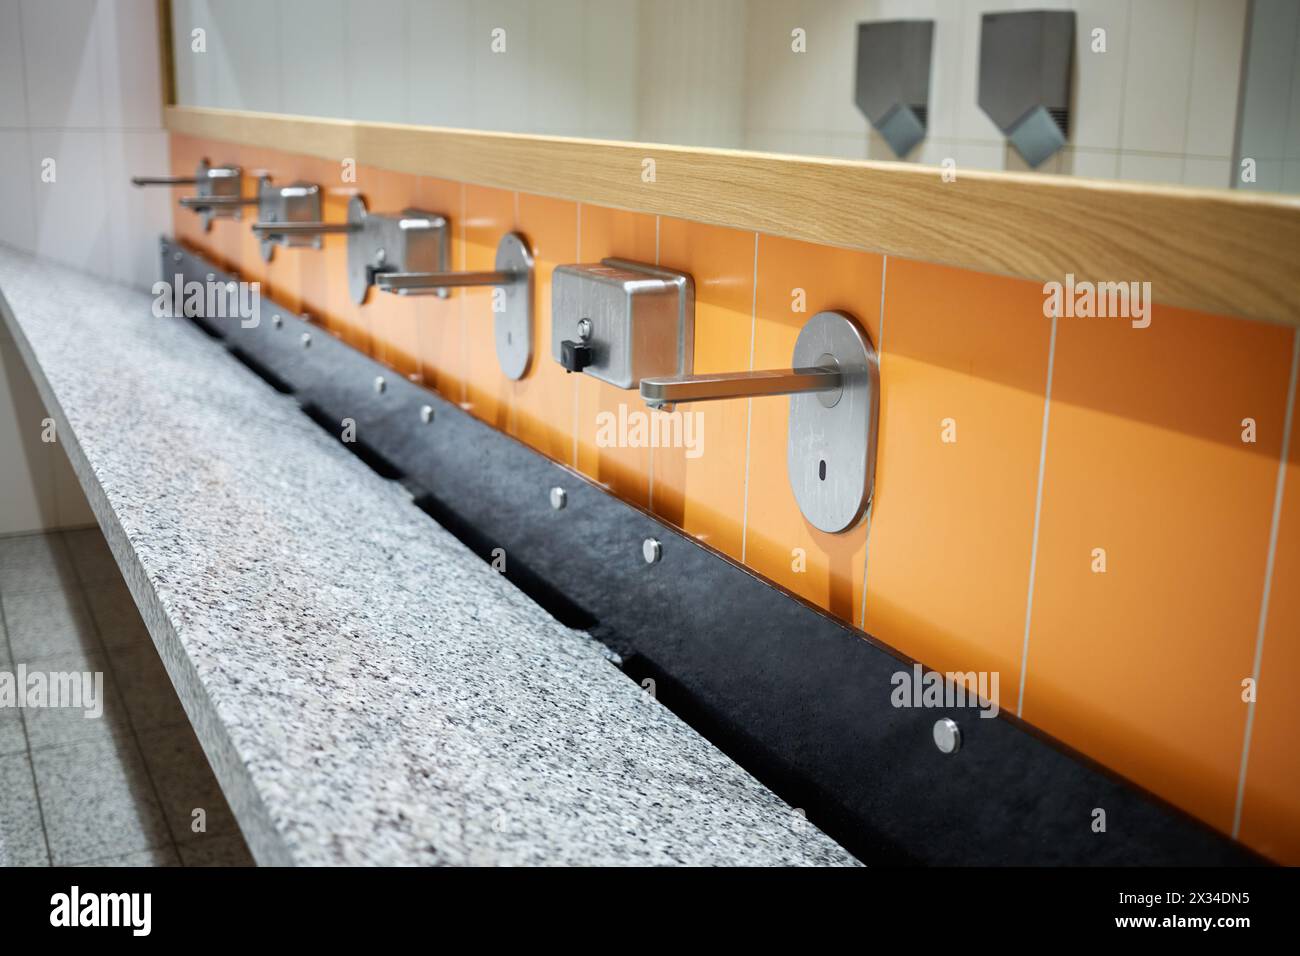 Großes Waschbecken mit mehreren Wasserhähnen und Spiegel darüber. Stockfoto